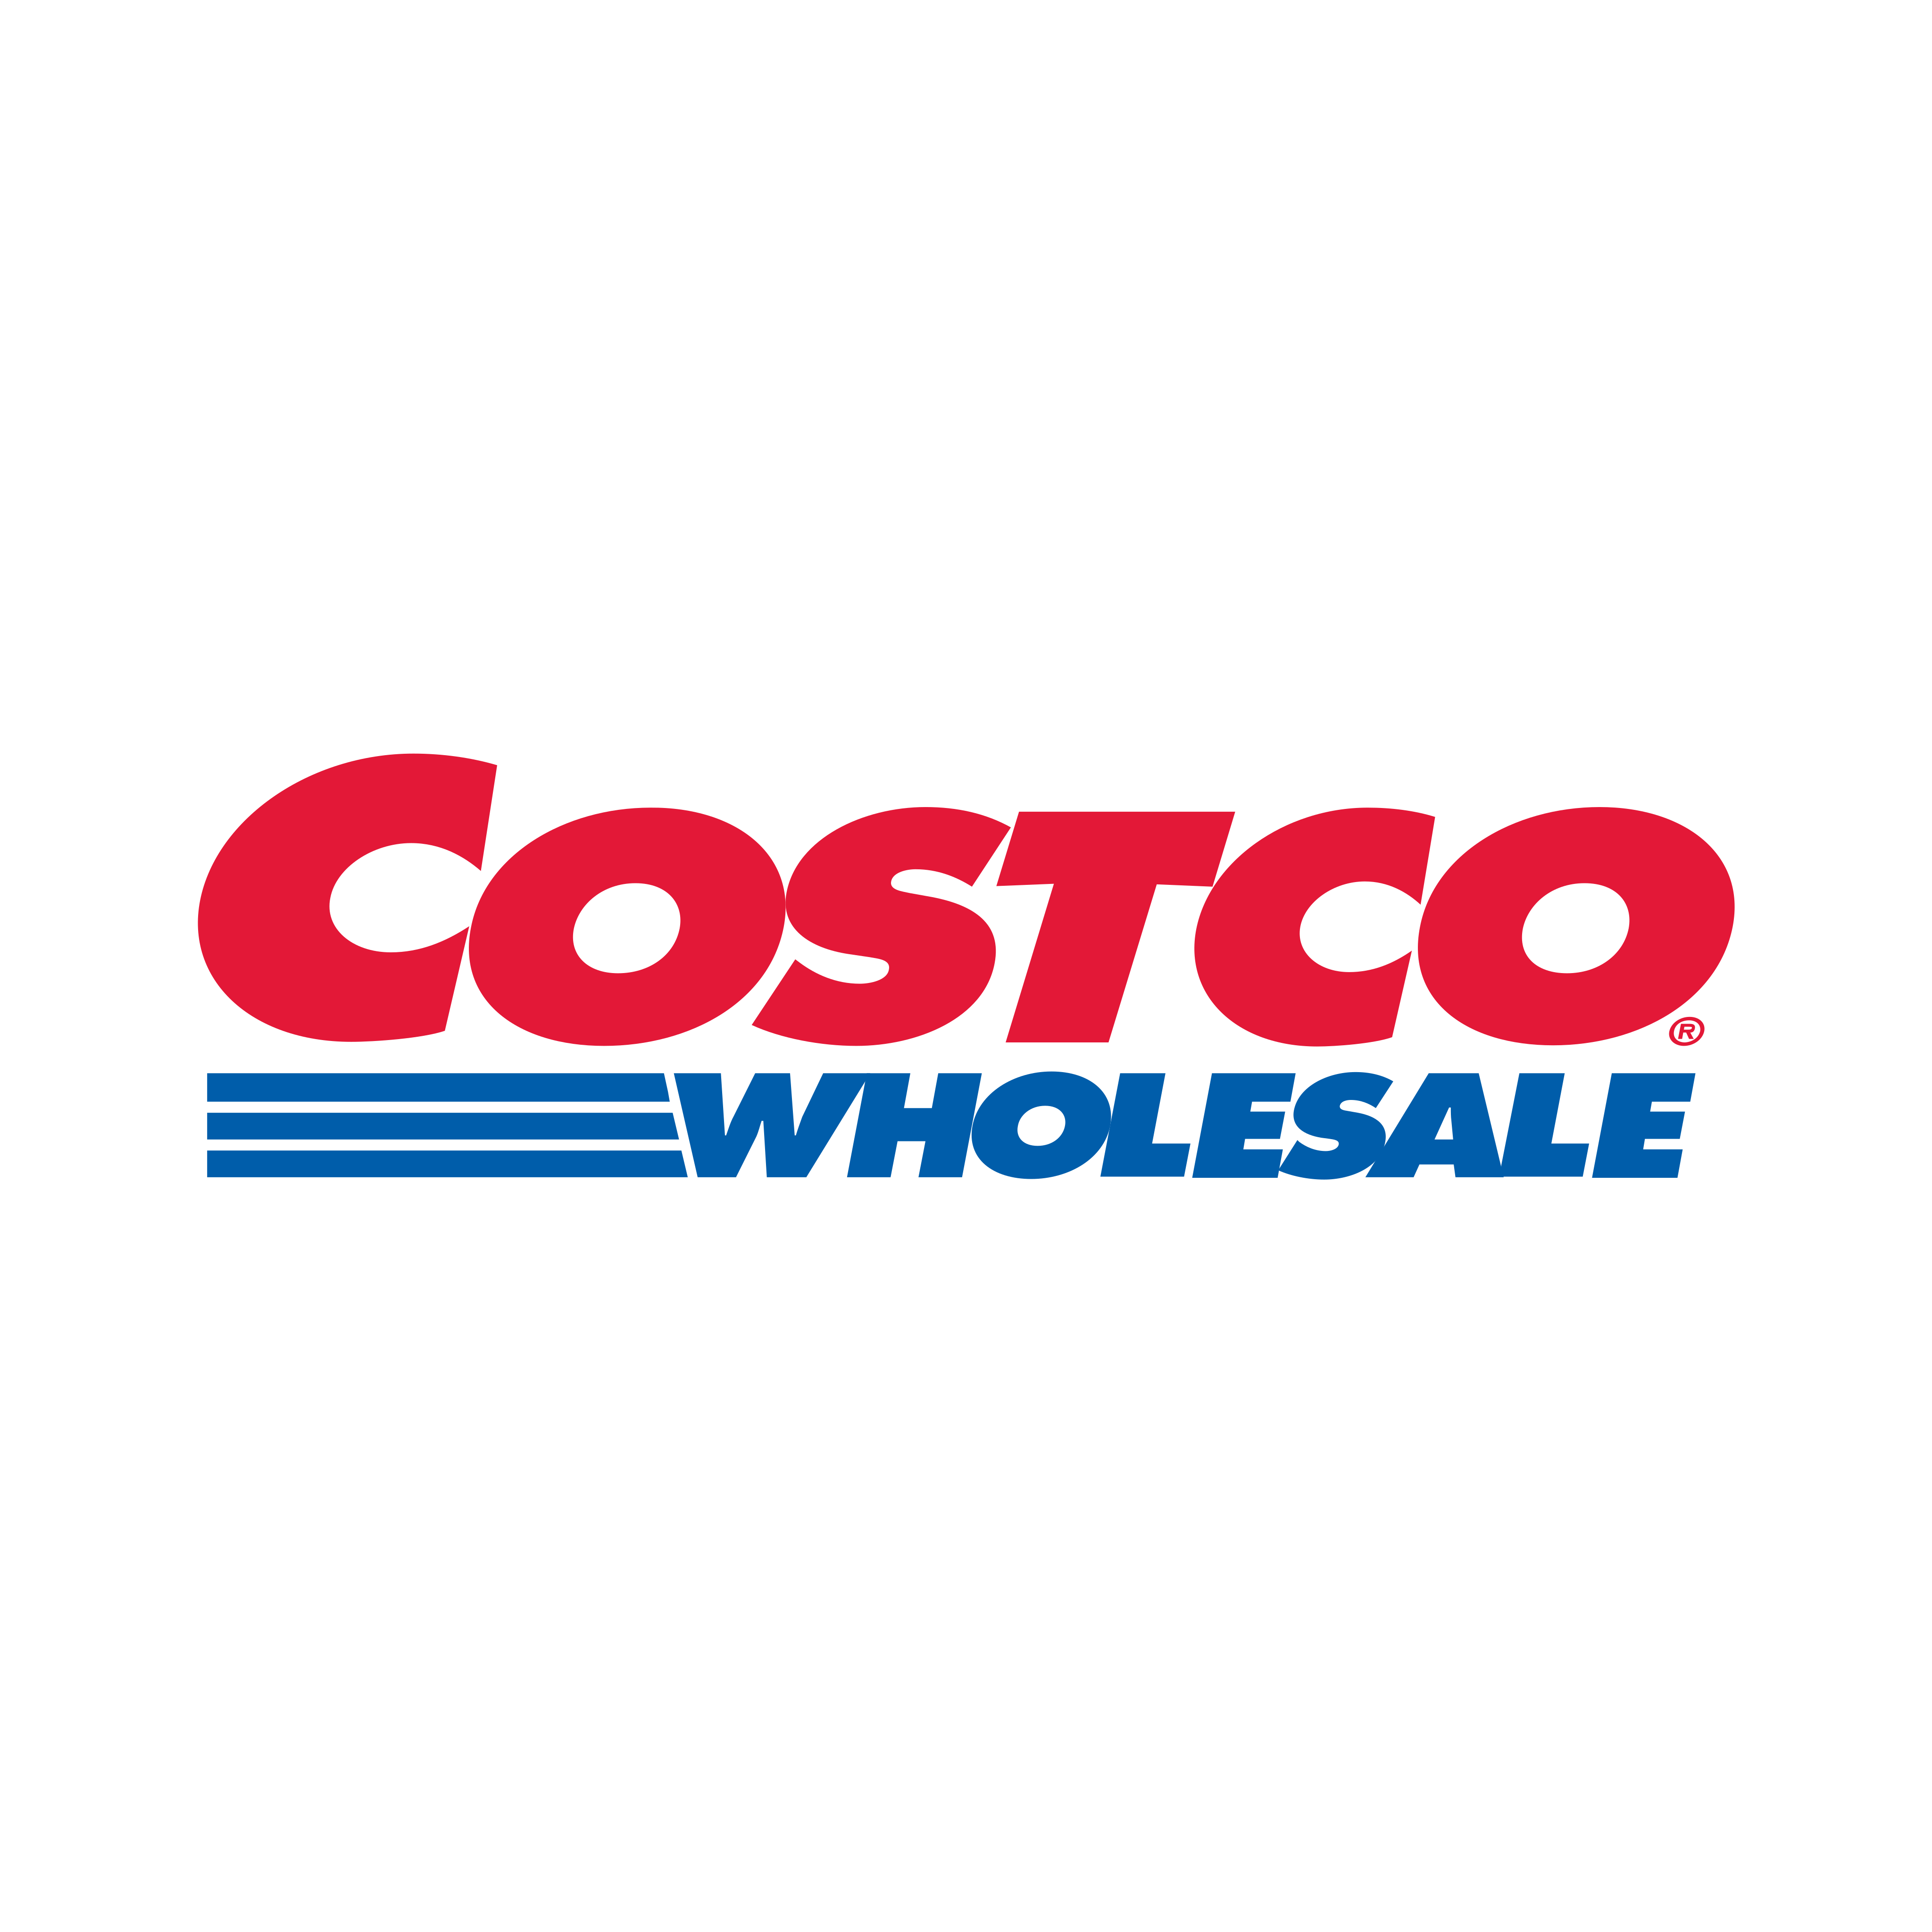 costco wholesale logo 0 - Costco Wholesale Logo